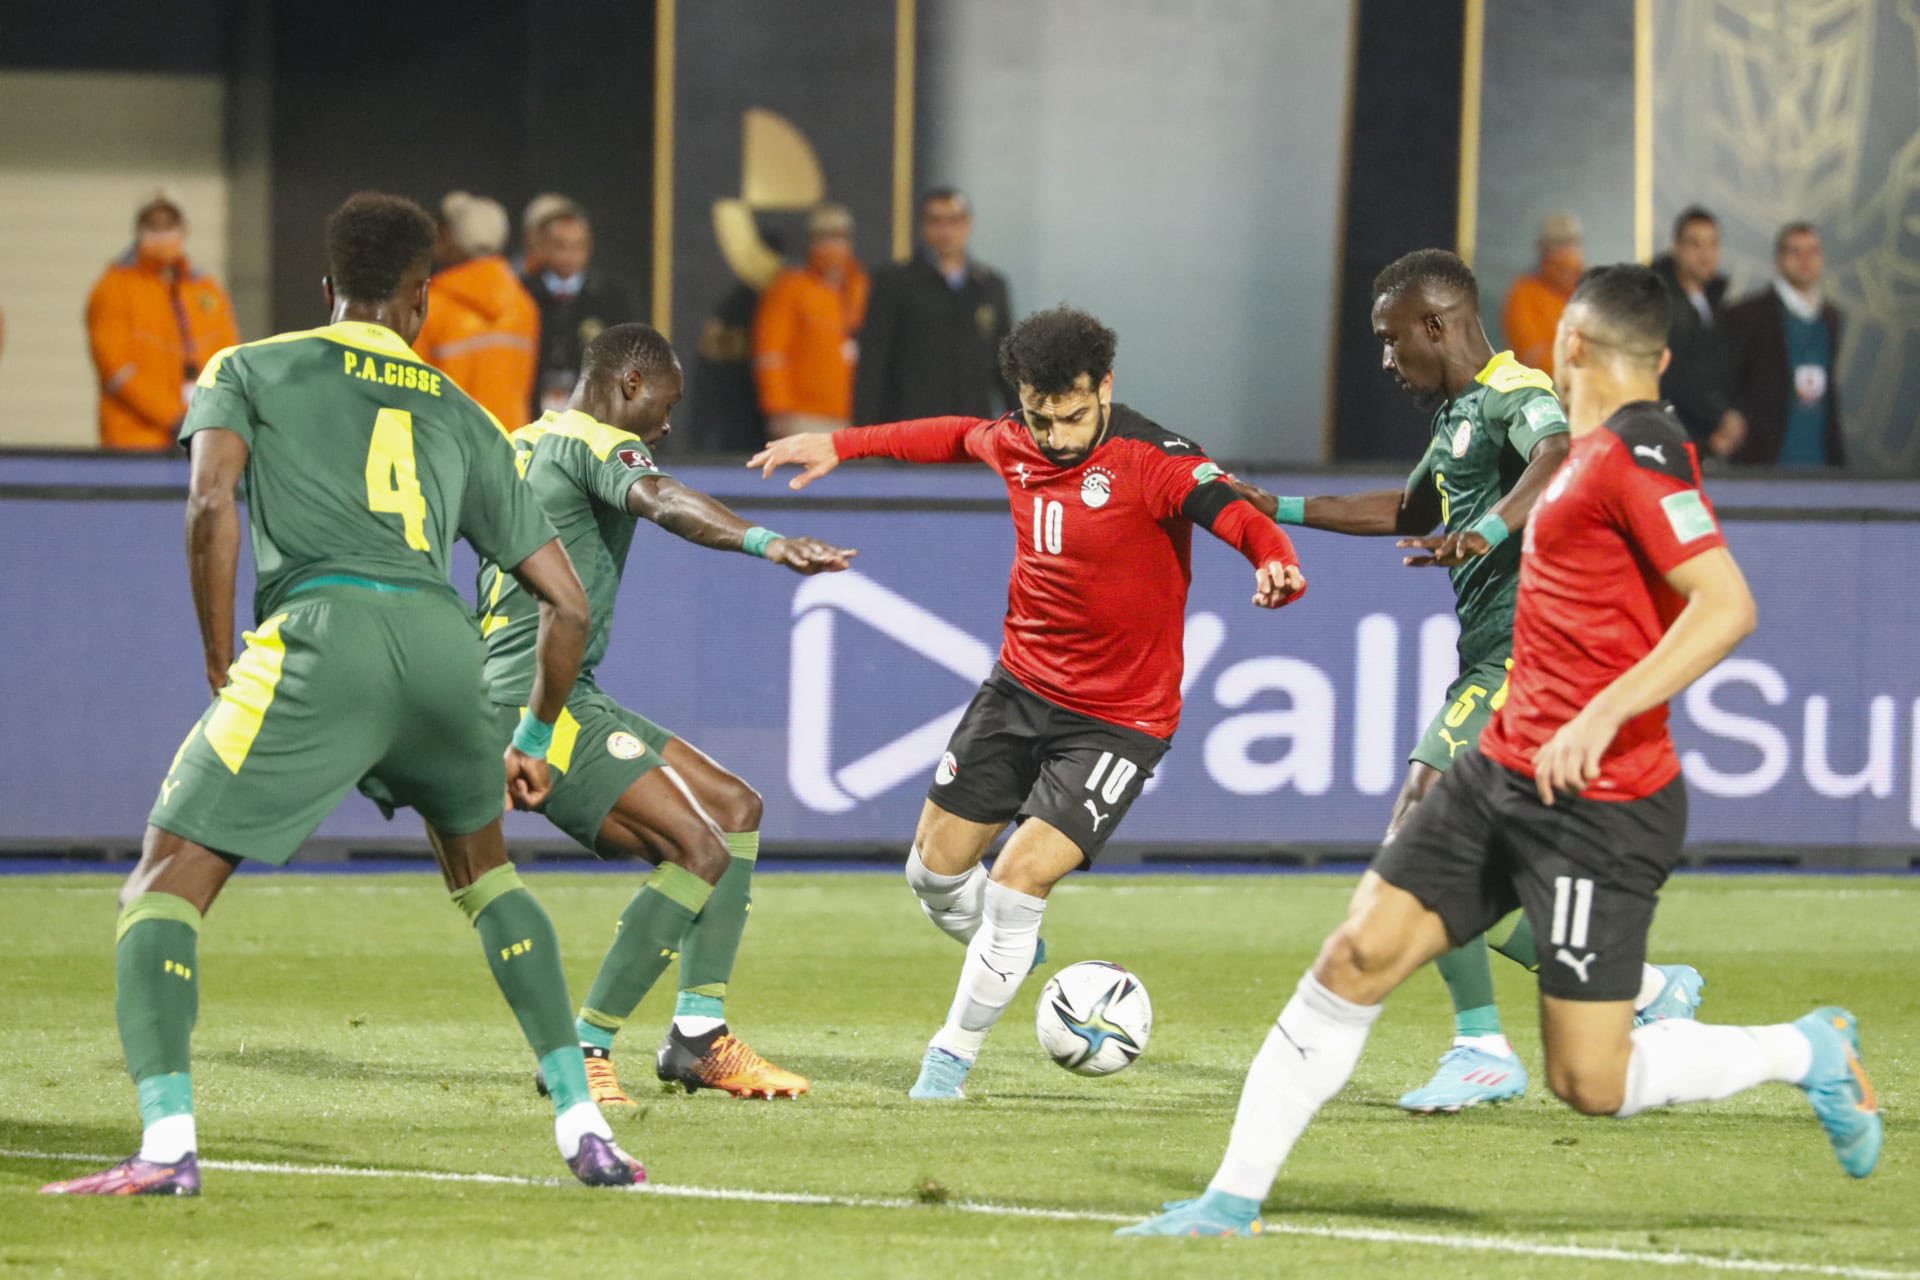 ماقصة اعادة مباراة مصر والسنغال بعد خروج المنتخب المصري من المونديال 2022